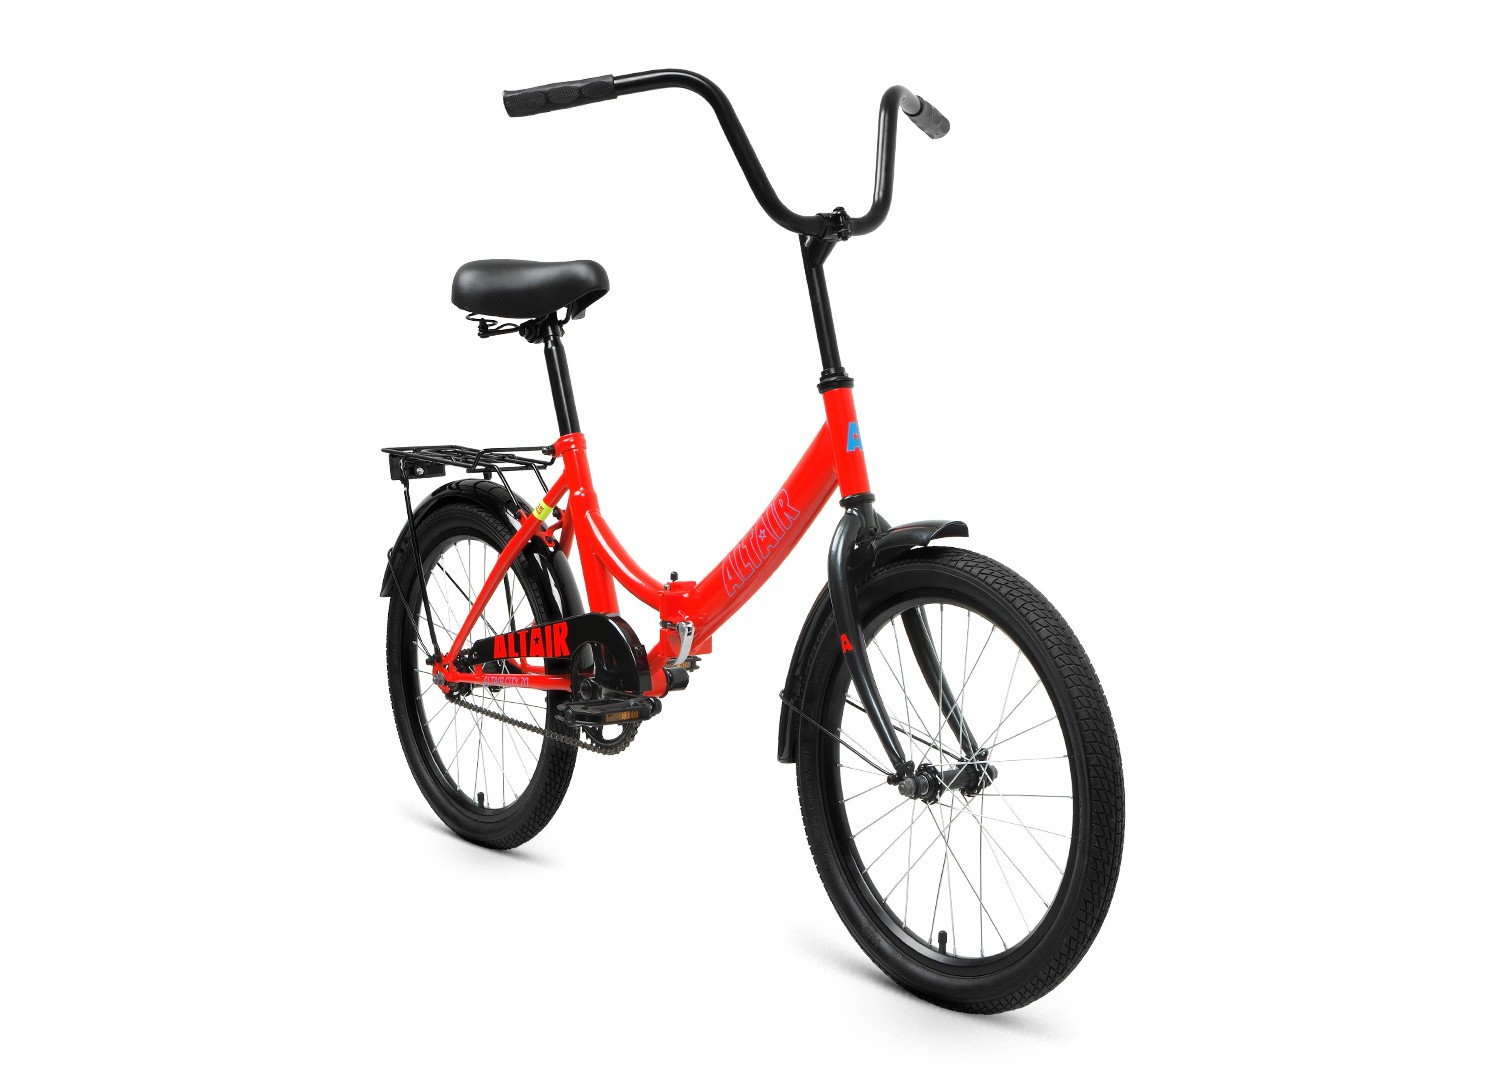 Складной велосипед Altair City 20, год 2022, цвет Фиолетовый-Серебристый, ростовка 14